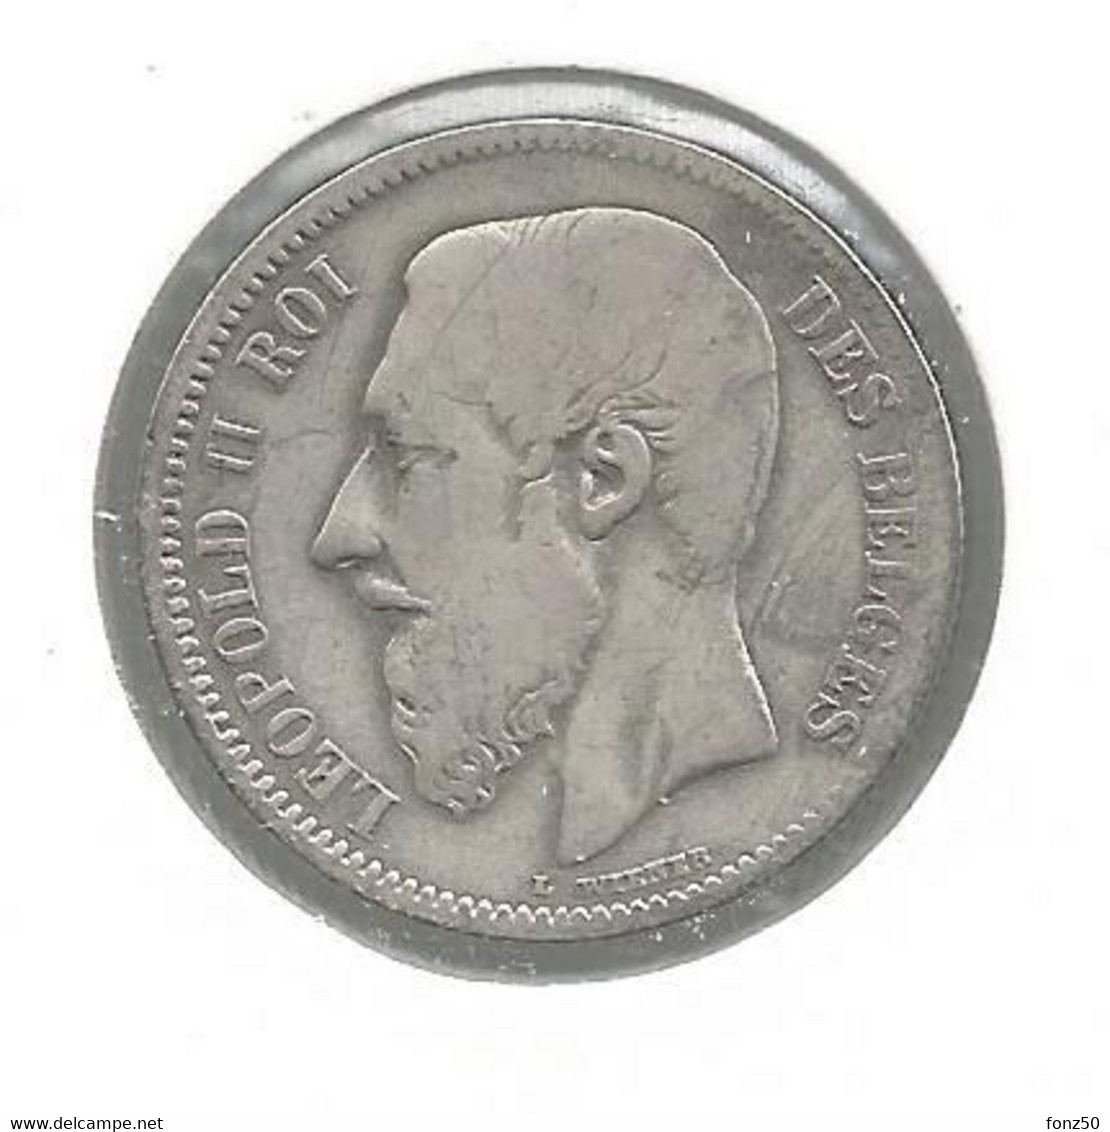 LEOPOLD II * 5 Frank 1868 * Z.Fraai * Nr 11027 - 2 Francs